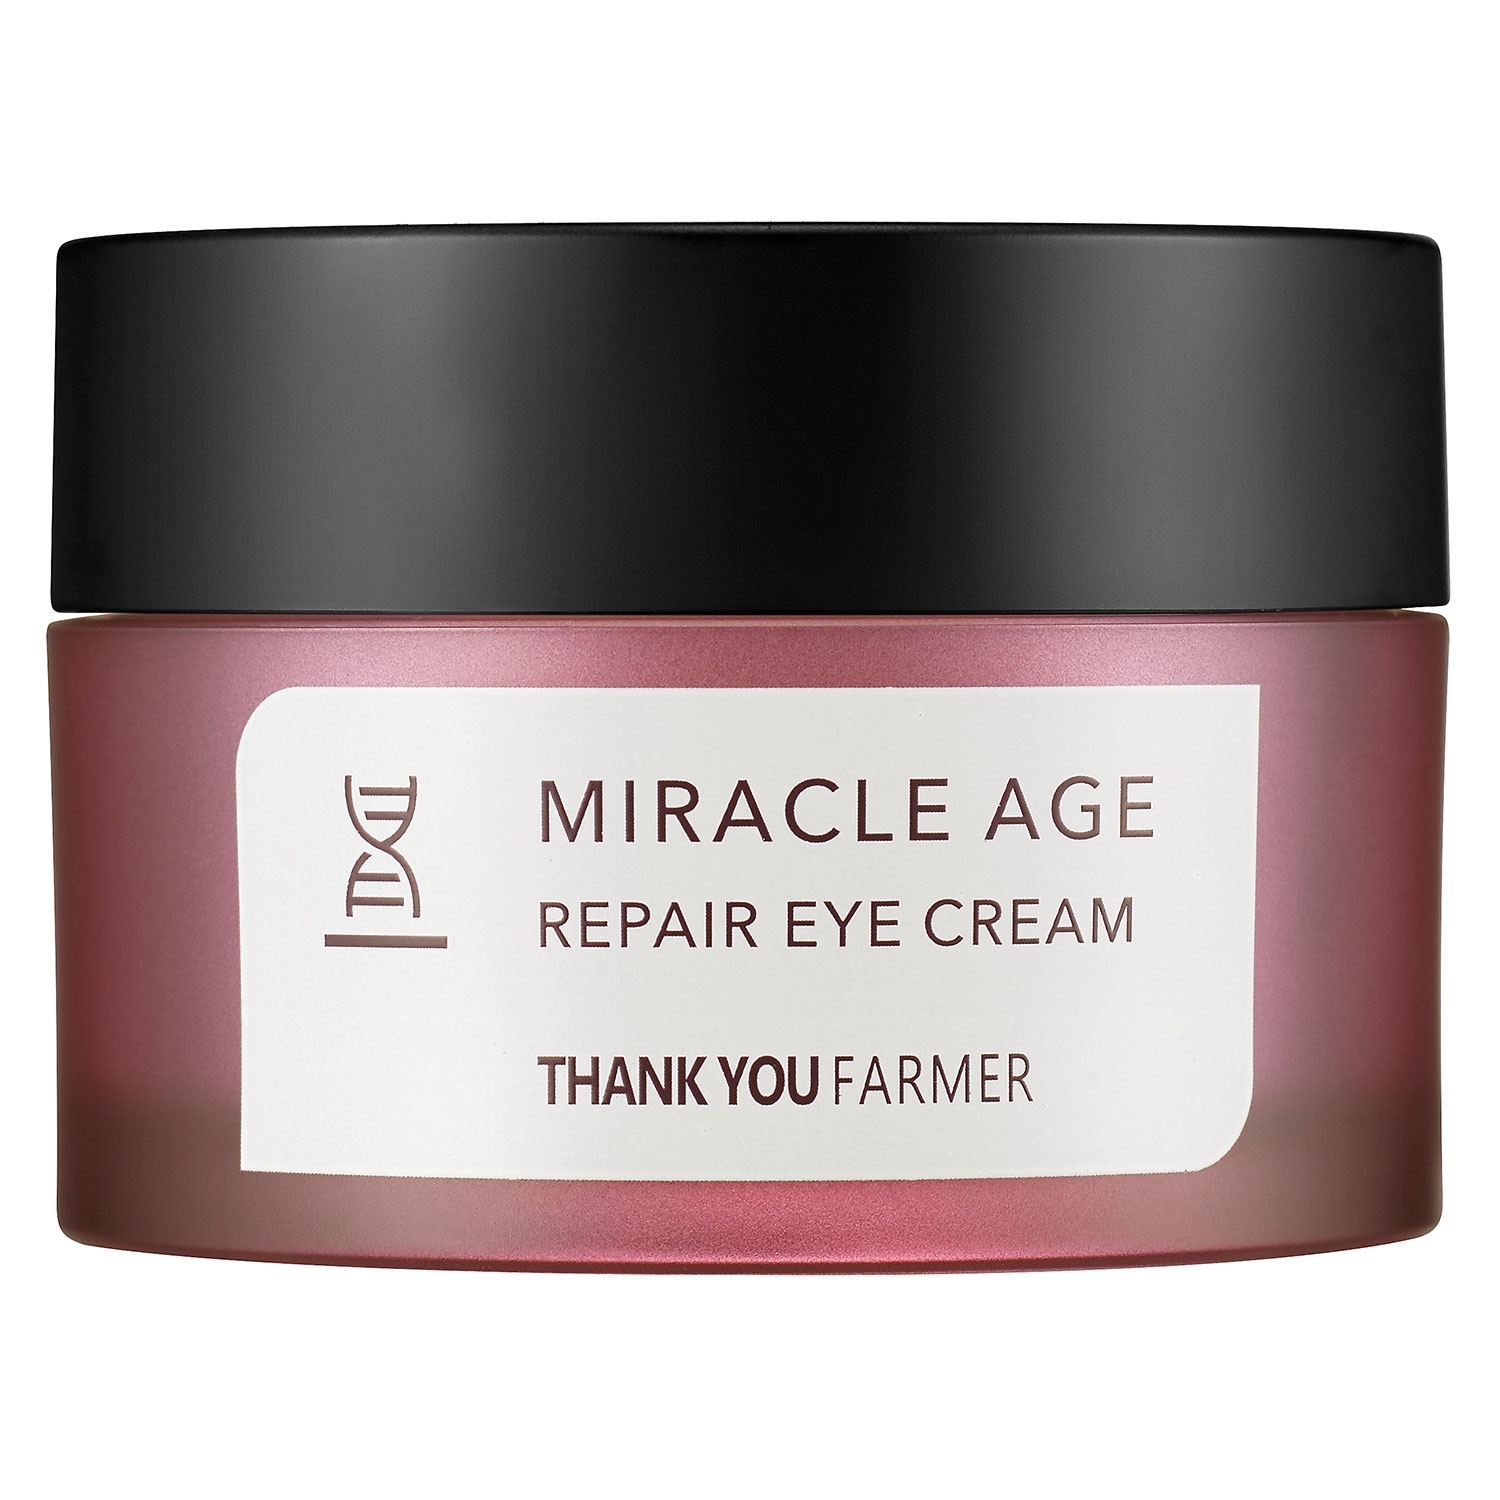 Produktbild von THANK YOU FARMER - Miracle Age Repair Eye Cream